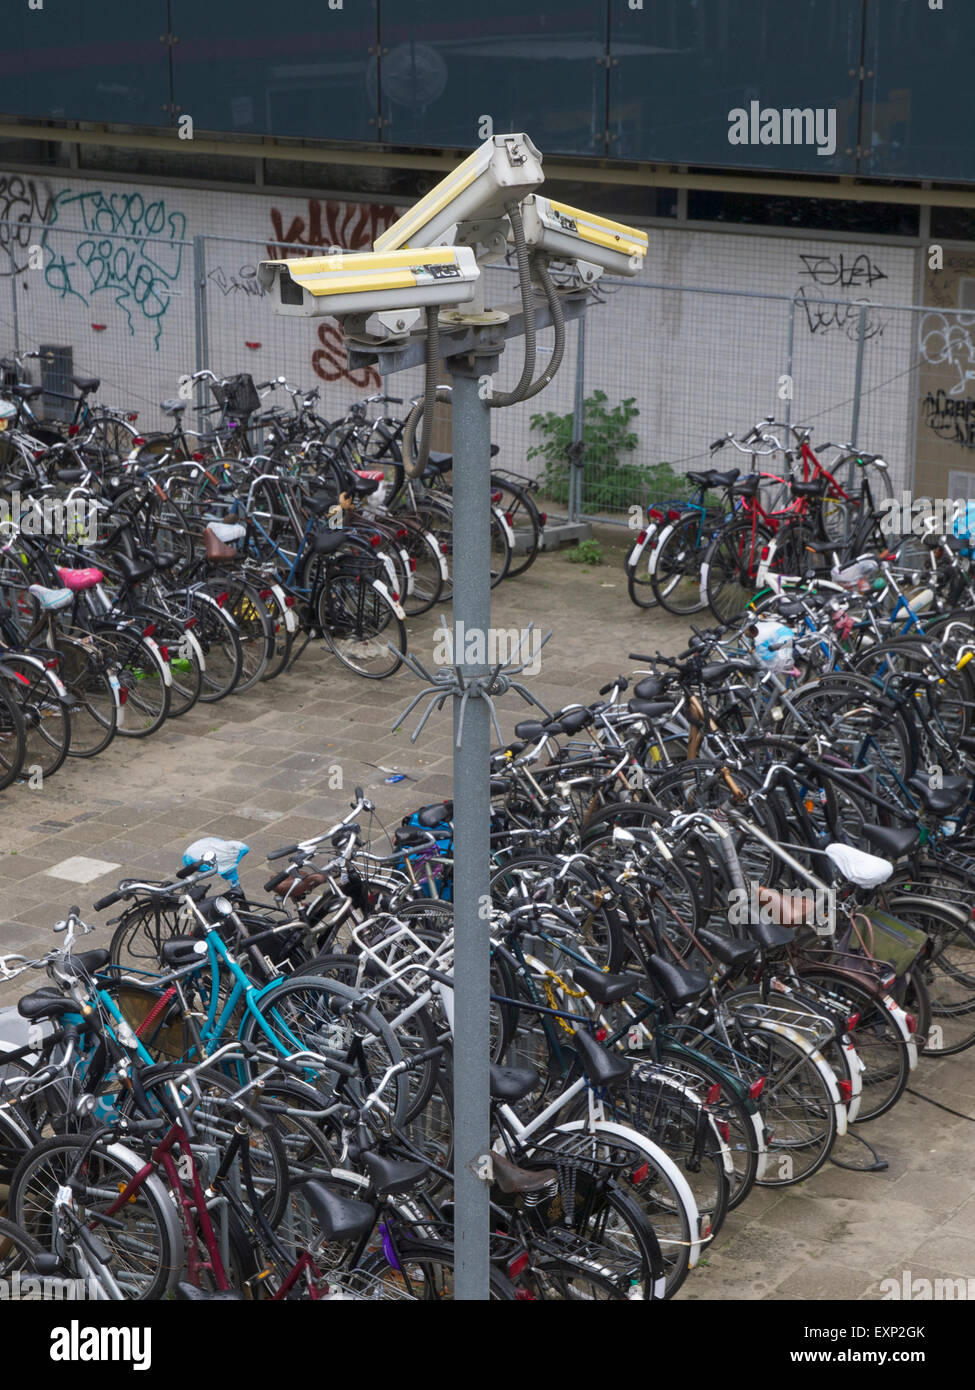 Les caméras de surveillance en circuit fermé à une location parking. Aux Pays-Bas environ 500000 à 750000 vélos volés chaque année Banque D'Images